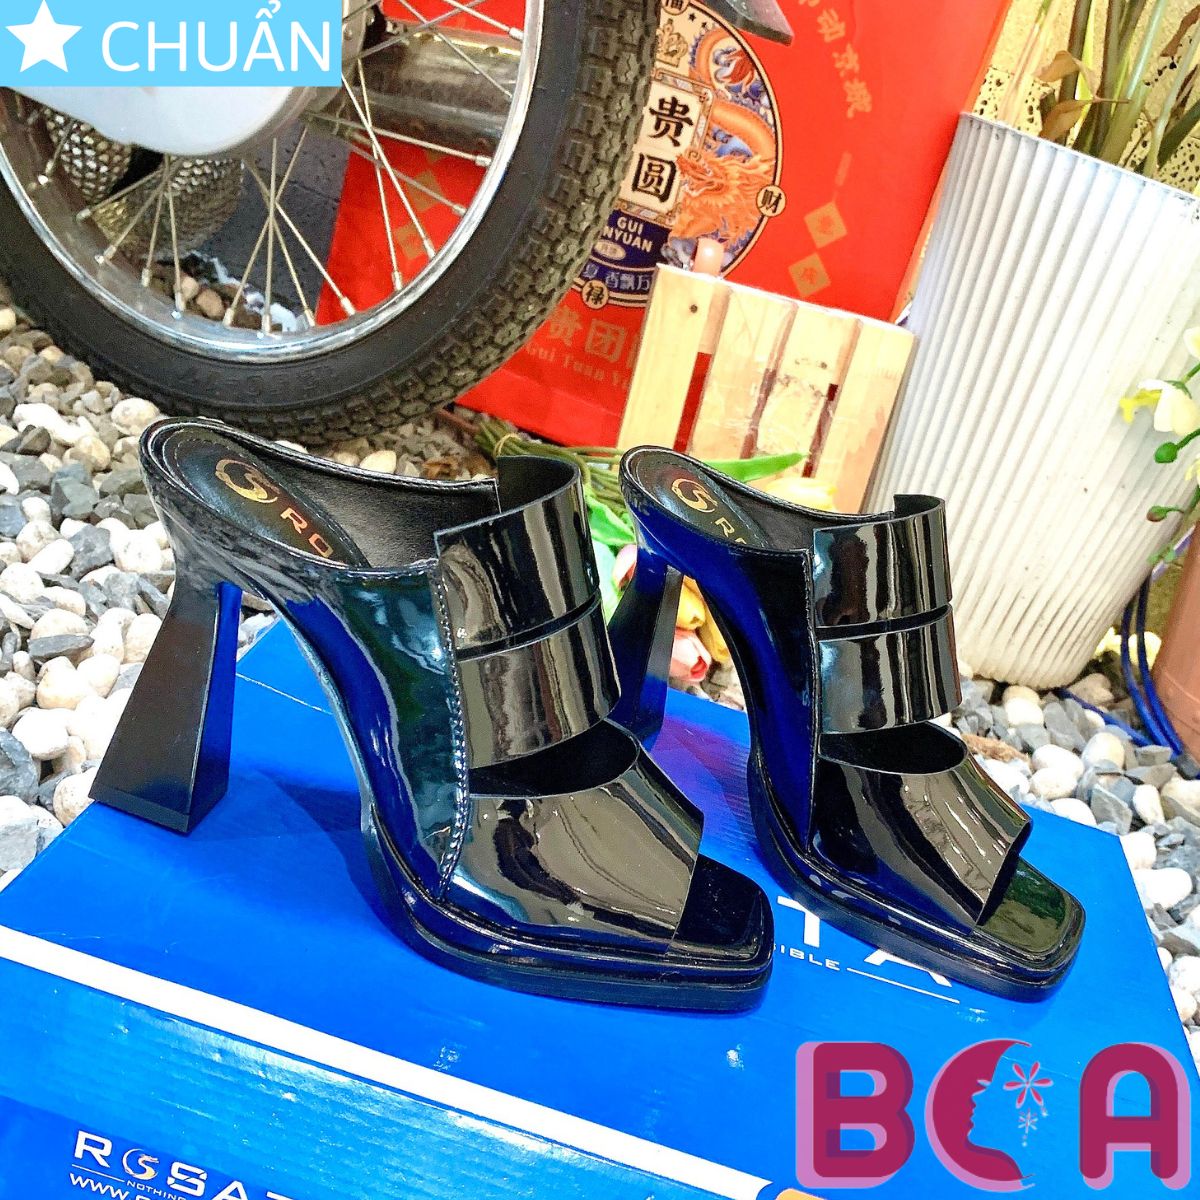 Giày sabo nữ 9p RO620 ROSATA tại BCASHOP thiết kế bề mặt bóng sang trọng và lớp trong êm ái là 1 mẫu siêu sang siêu tôn dáng